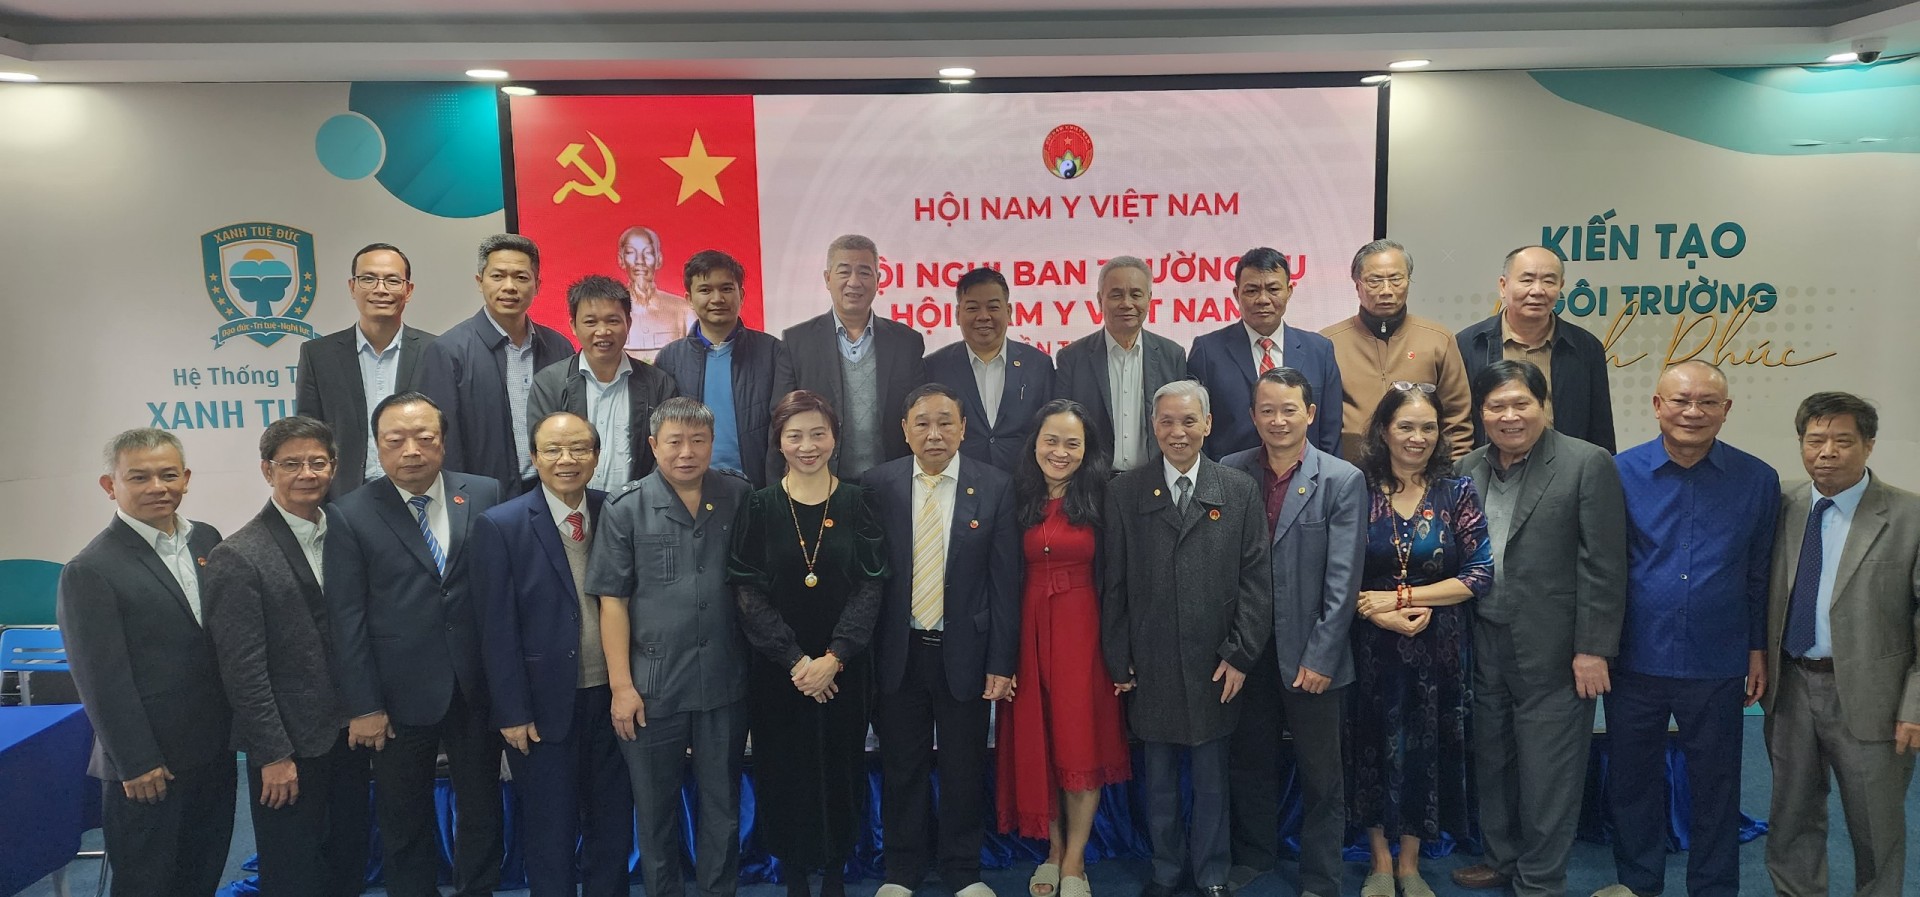 Hội Nam Y Việt Nam tổ chức Hội nghị Ban thường vụ lần thứ 4